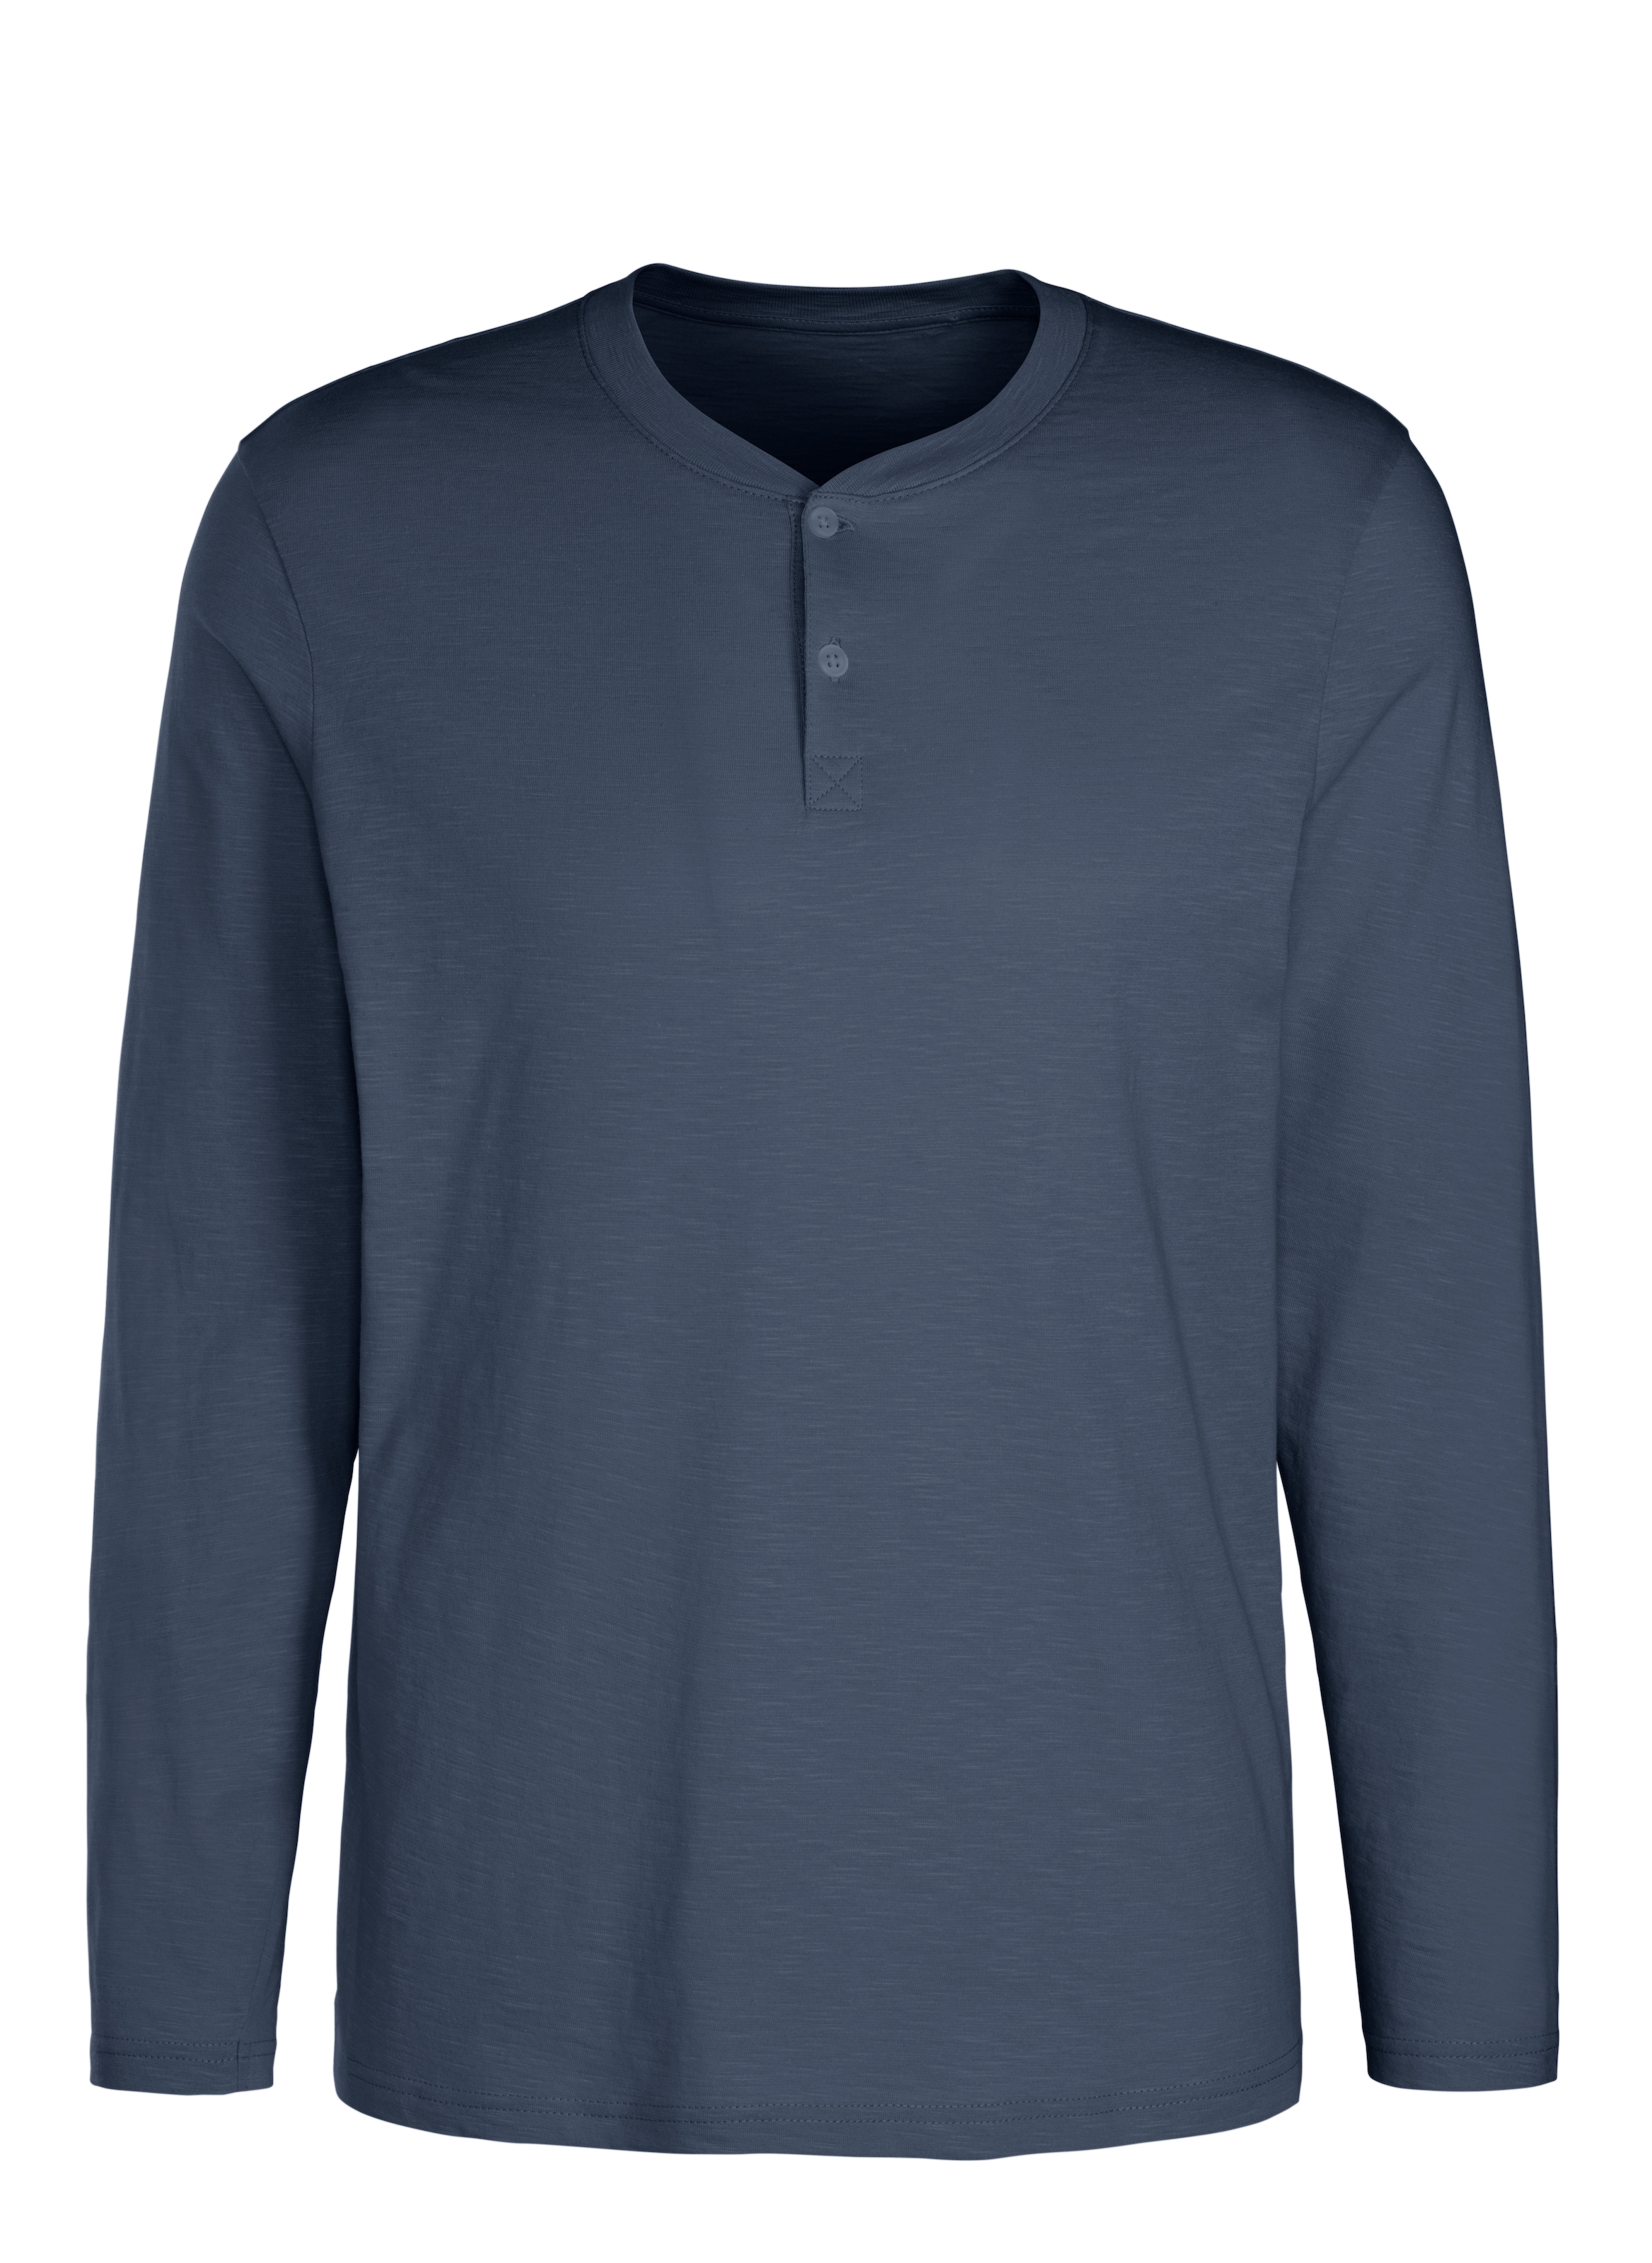 H.I.S Langarmshirt, Shirt mit Knopfleiste aus aus strukturierter Baumwoll-Qualität